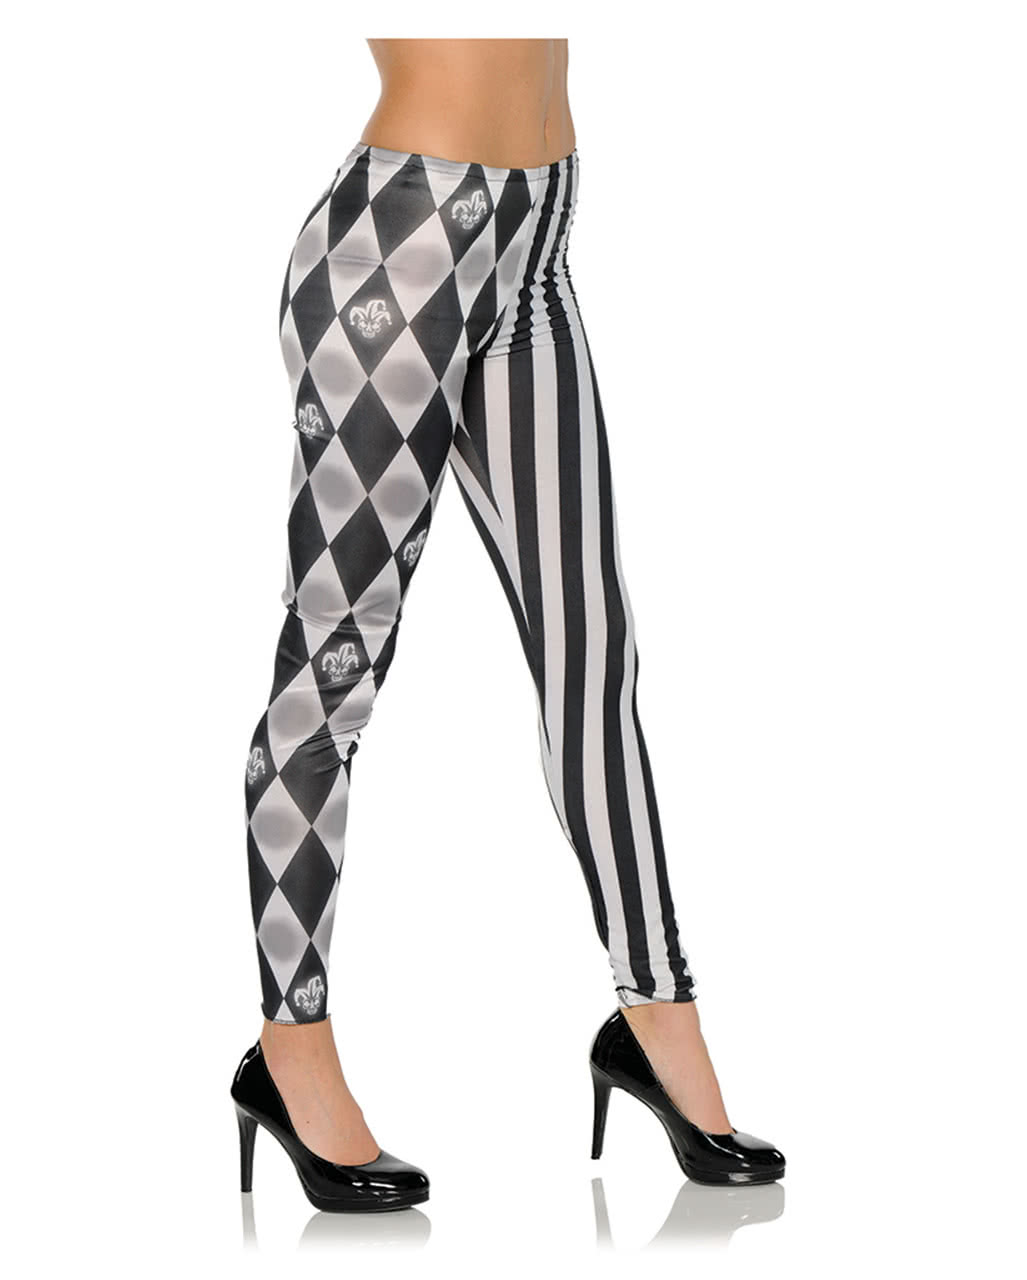 Harlequin costume leggings black-white, Halloween trousers